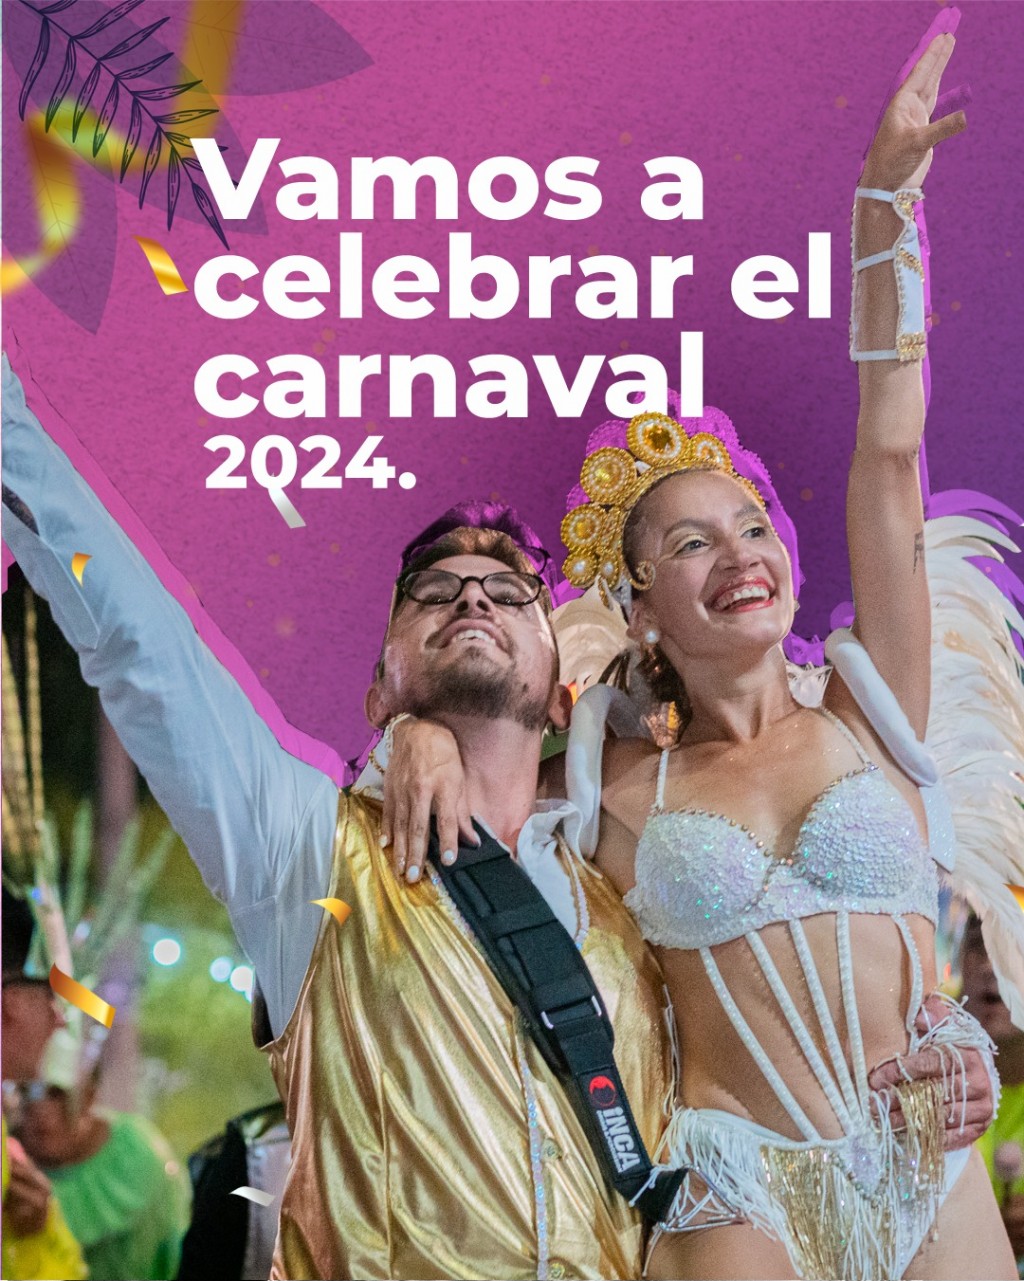 Celebremos el carnaval 2024.  Dale una mirada a las fechas